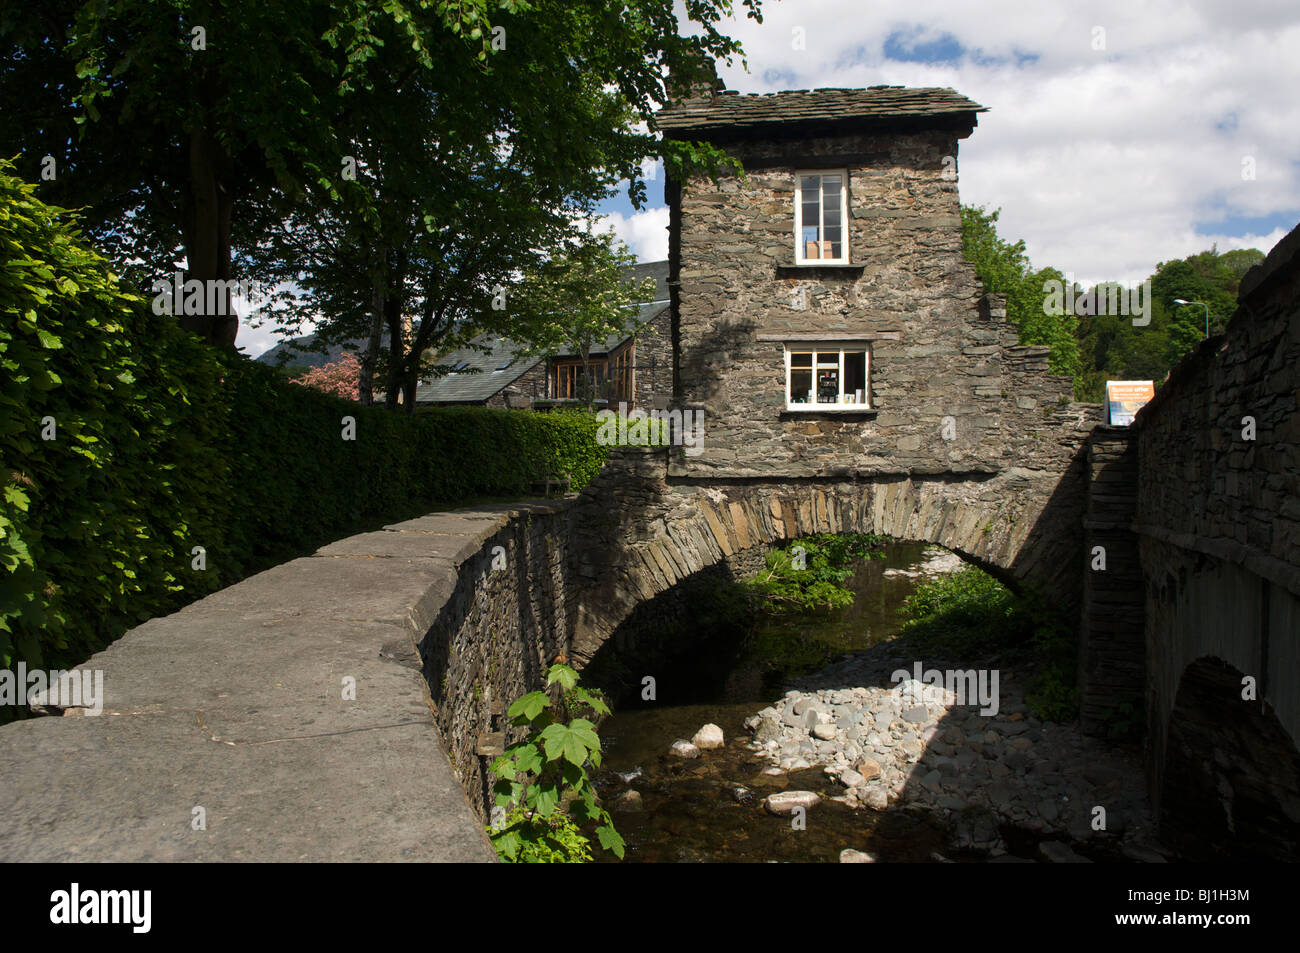 Le Bridge House, propriété du National Trust, Ambleside, Lake District, Cumbria, Angleterre, Royaume-Uni Banque D'Images